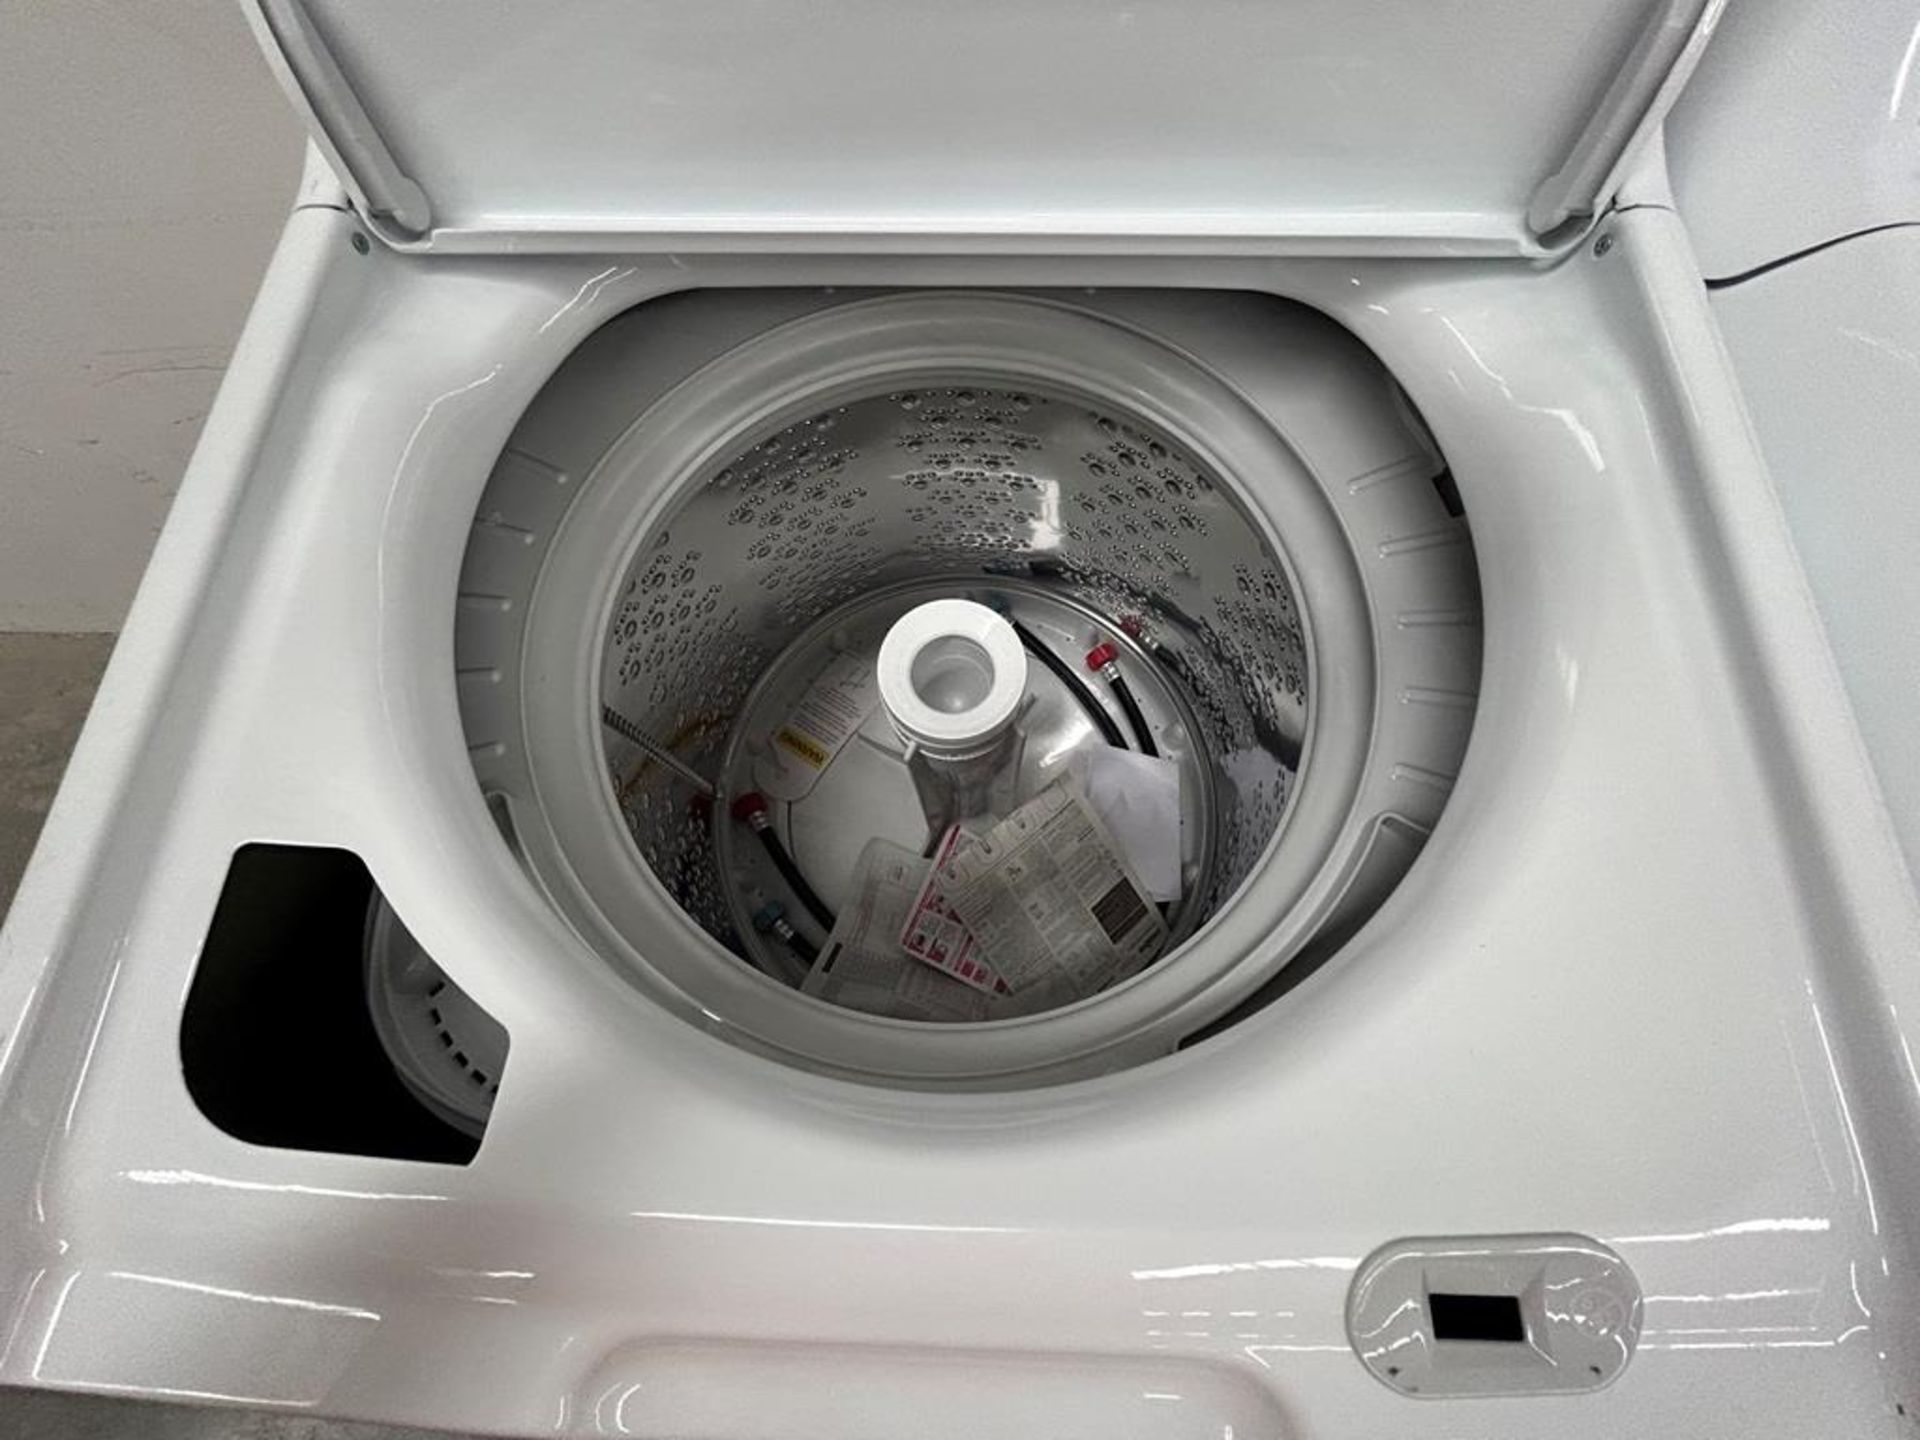 Lote de 2 lavadoras contiene: 1 Lavadora de 18 KG Marca MABE, Modelo LMA78113CBAB01, Serie S74287, - Image 5 of 10